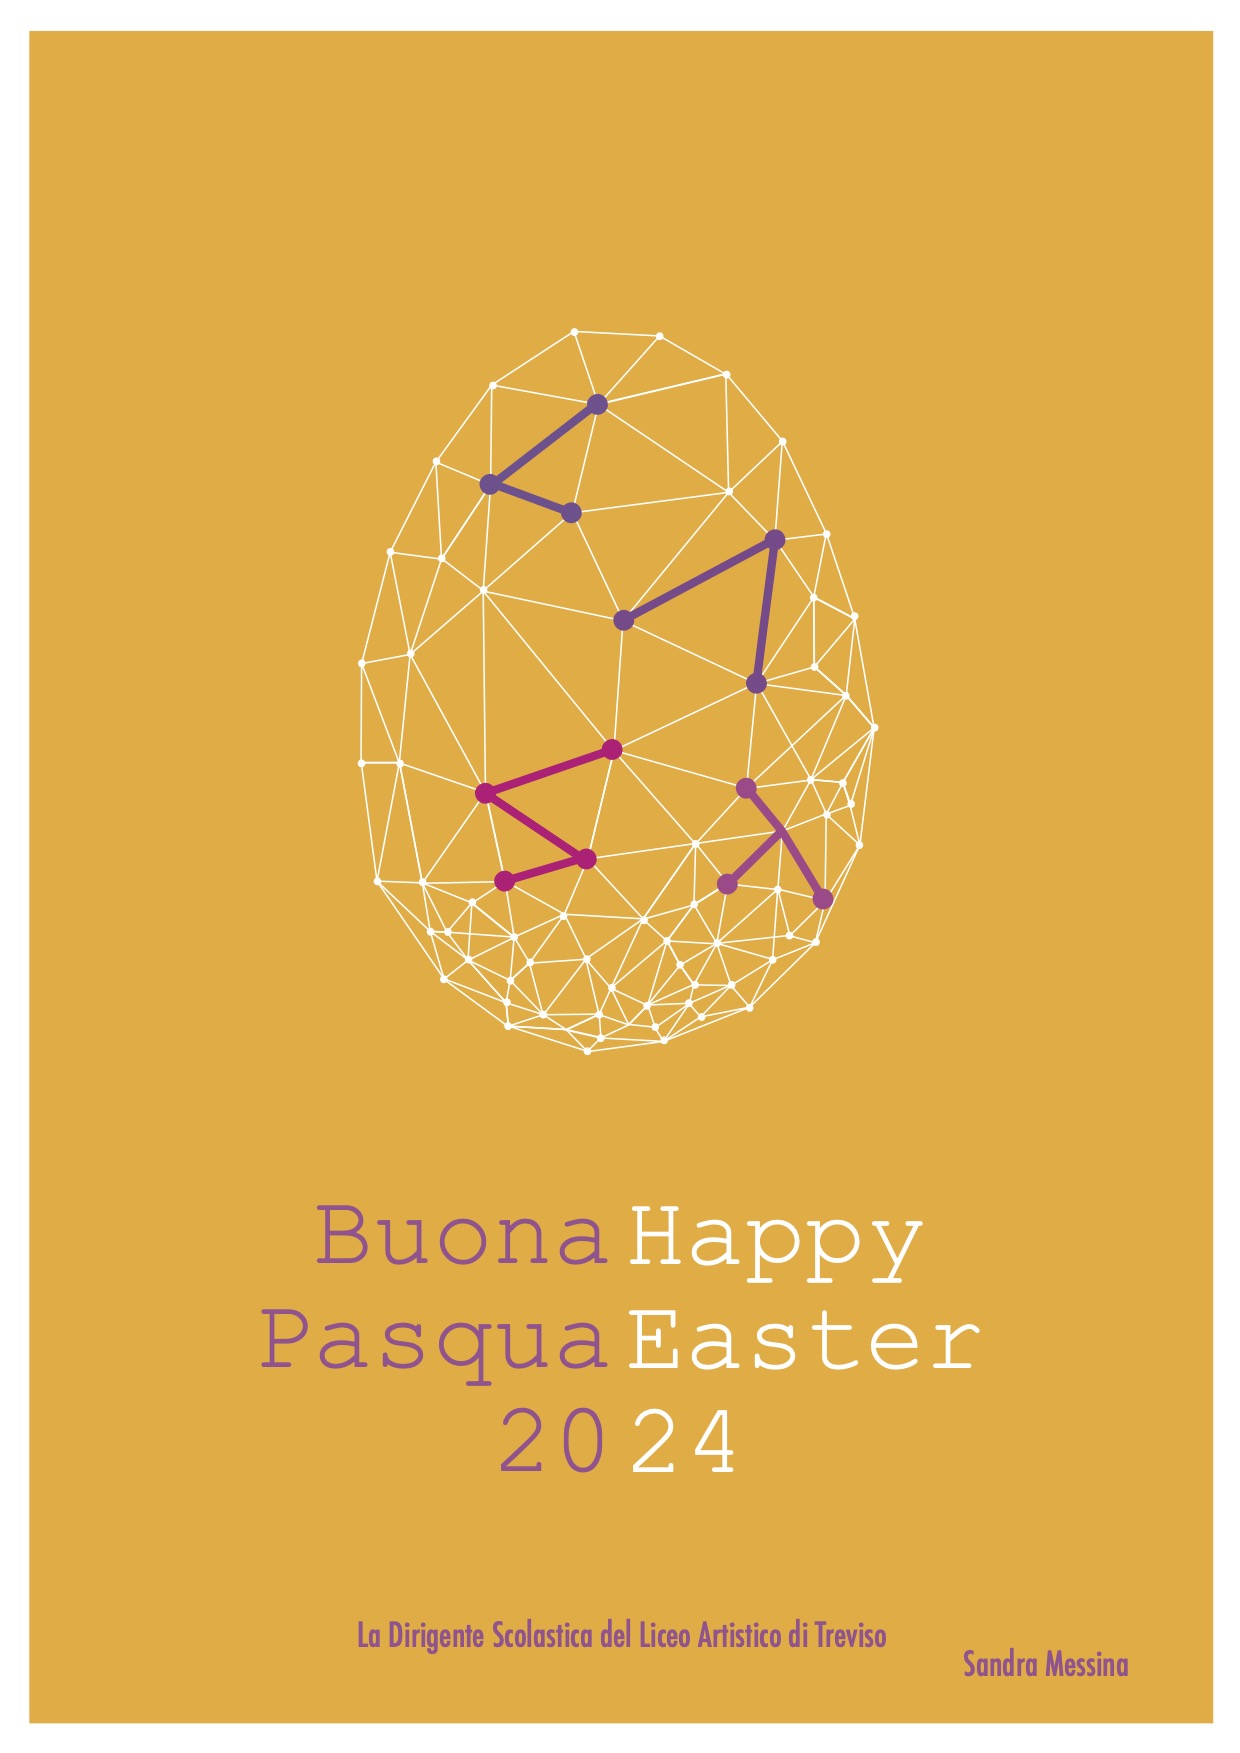 Buona Pasqua Happy Easter 2024 - Uovo di pasqua stilizzato su sondo giallo